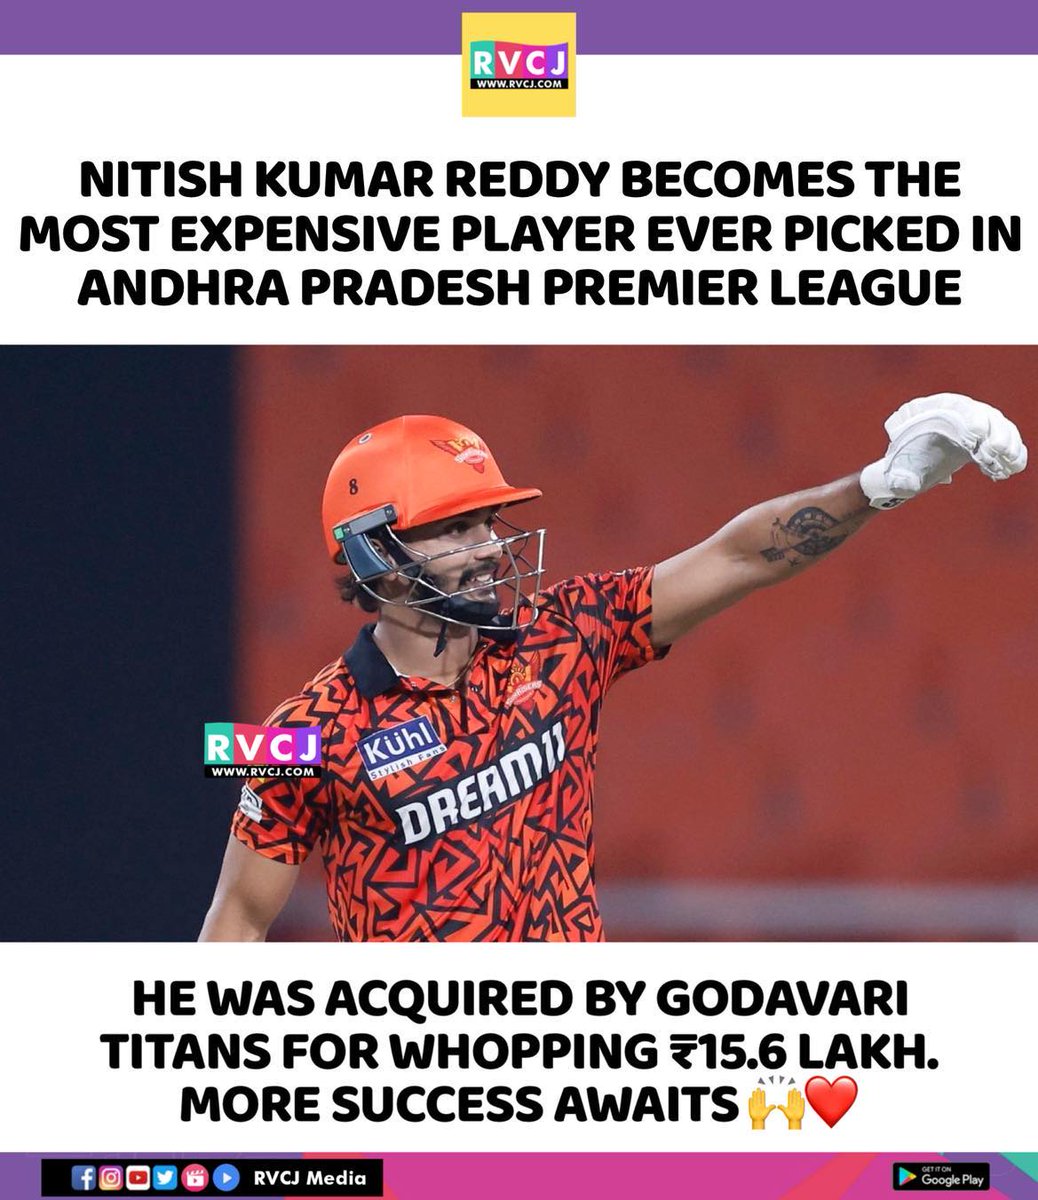 Nitish Kumar Reddy 
#nitishkumarreddy